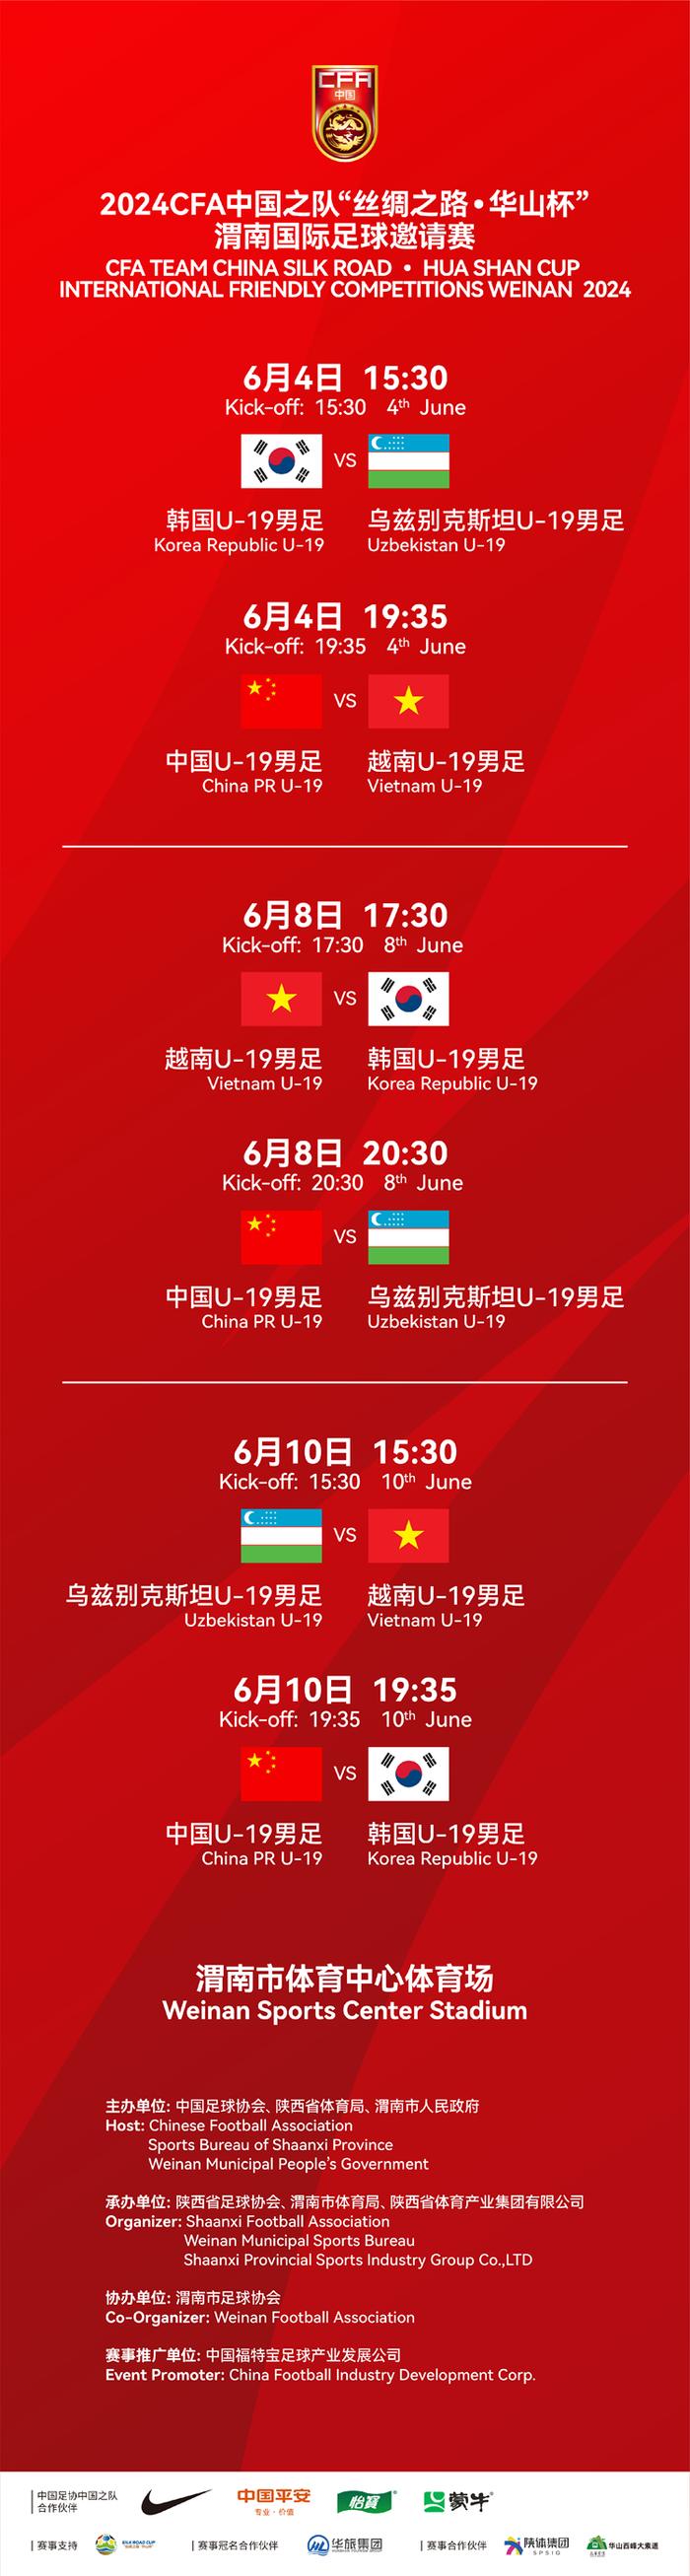 中国之队·渭南国际足球邀请赛赛程调整 球迷福利日联票一票看两场